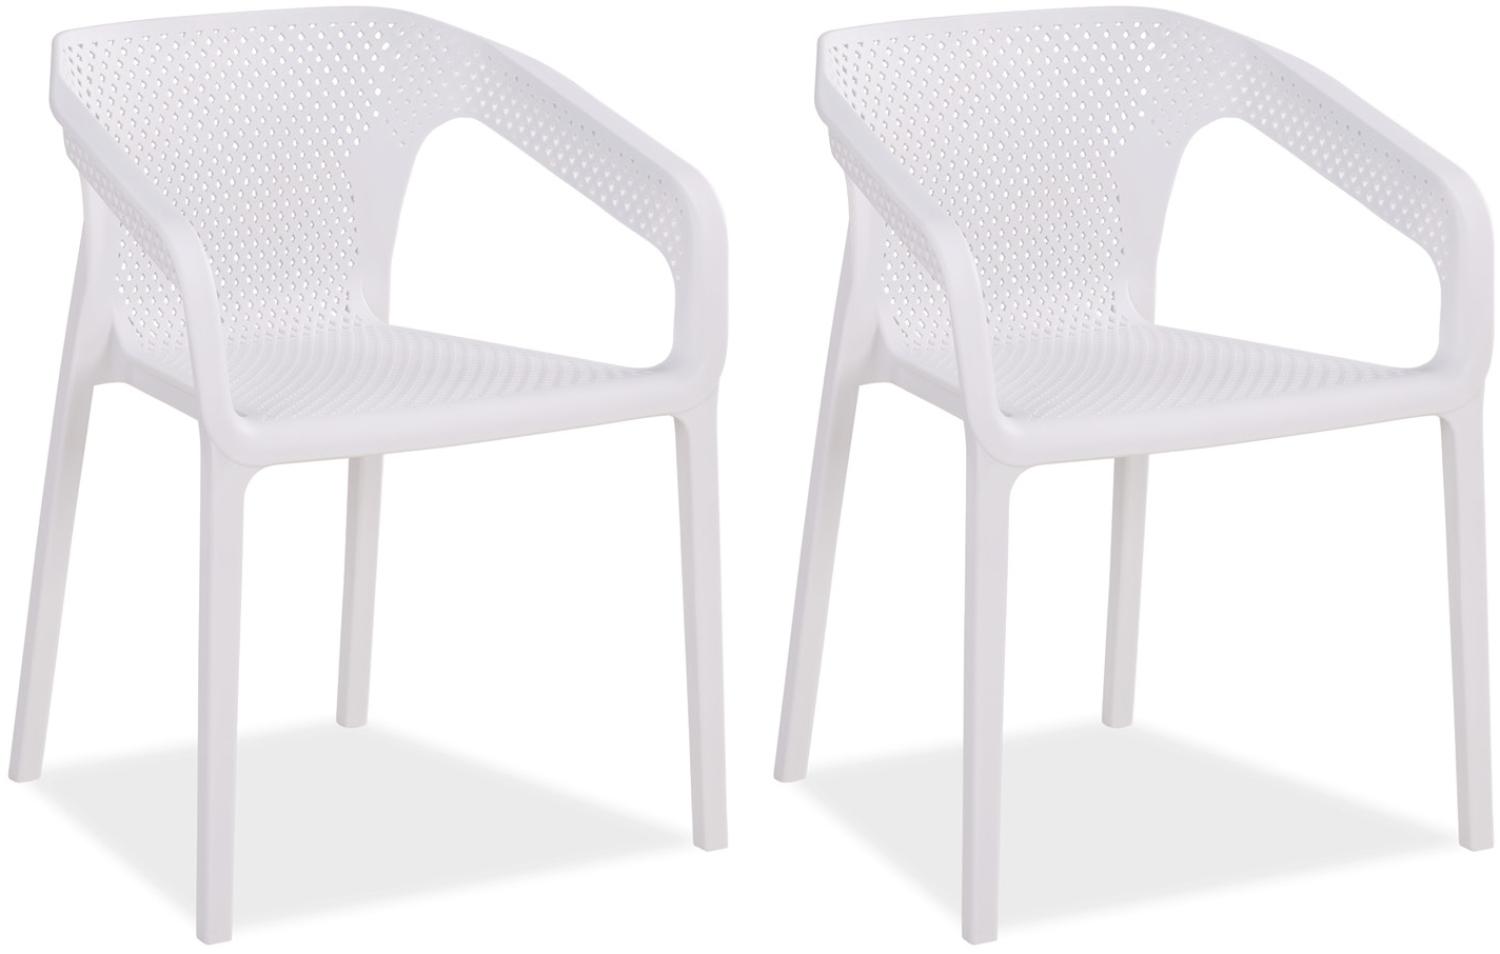 Gartenstuhl mit Armlehnen 2er Set Gartensessel Weiß Stühle Kunststoff Stapelstühle Balkonstuhl Outdoor-Stuhl Bild 1